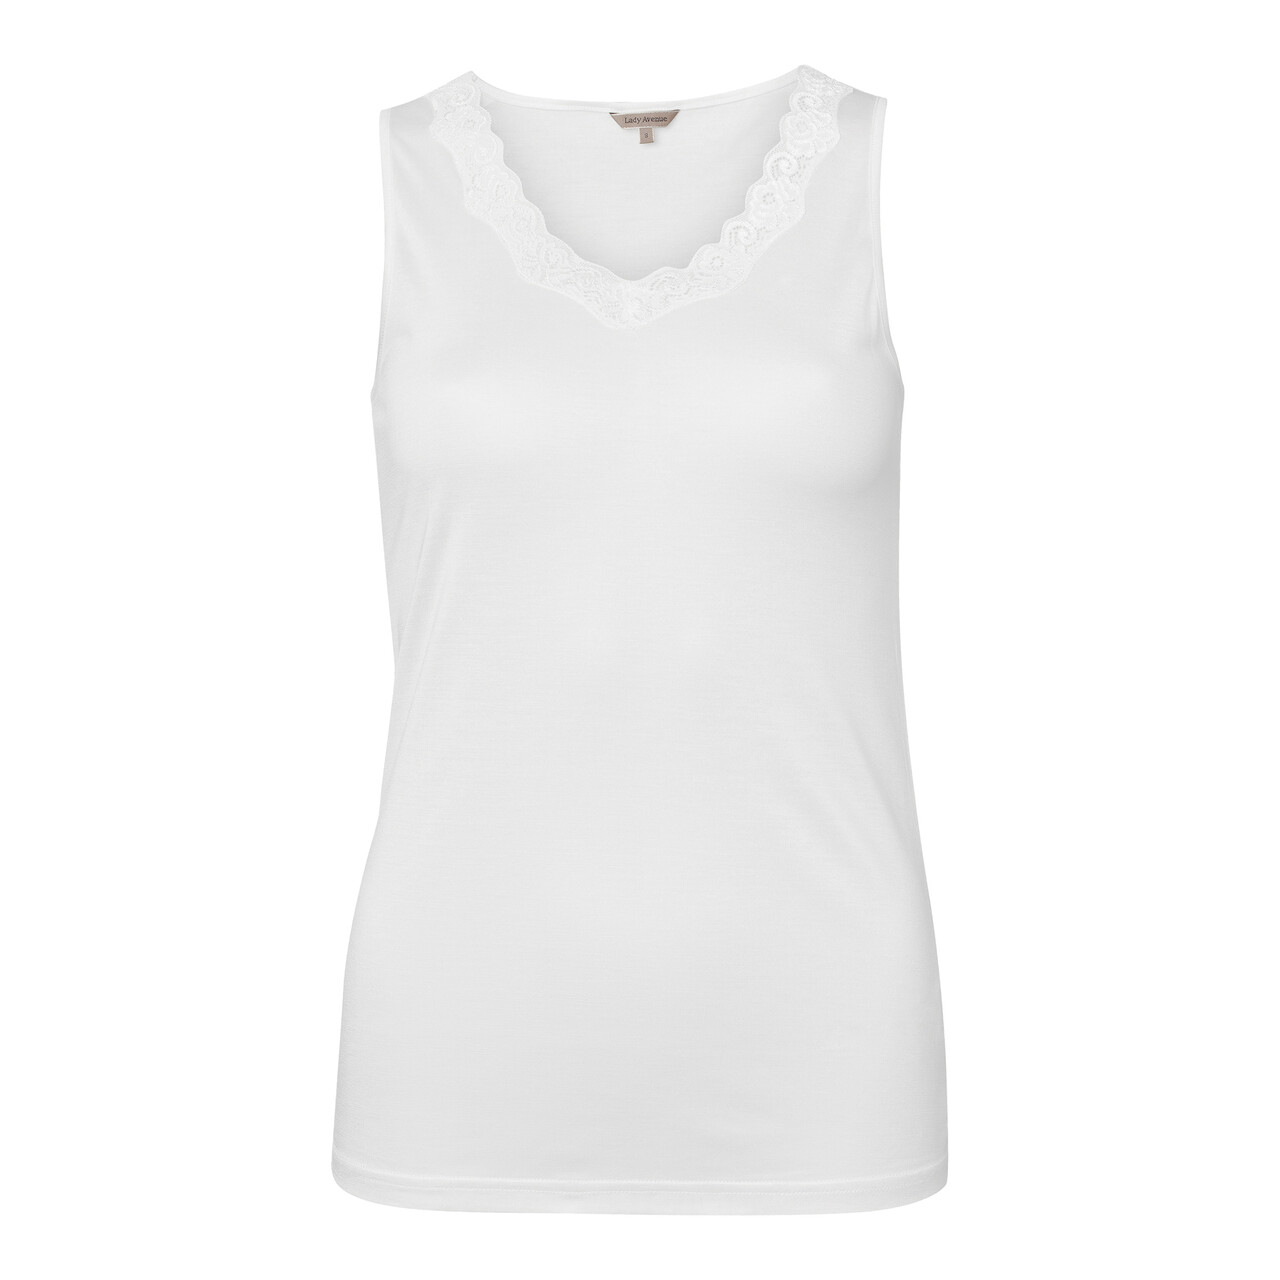 Se Lady Avenue Silk Jersey Top, Farve: Hvid, Størrelse: S, Dame hos Netlingeri.dk